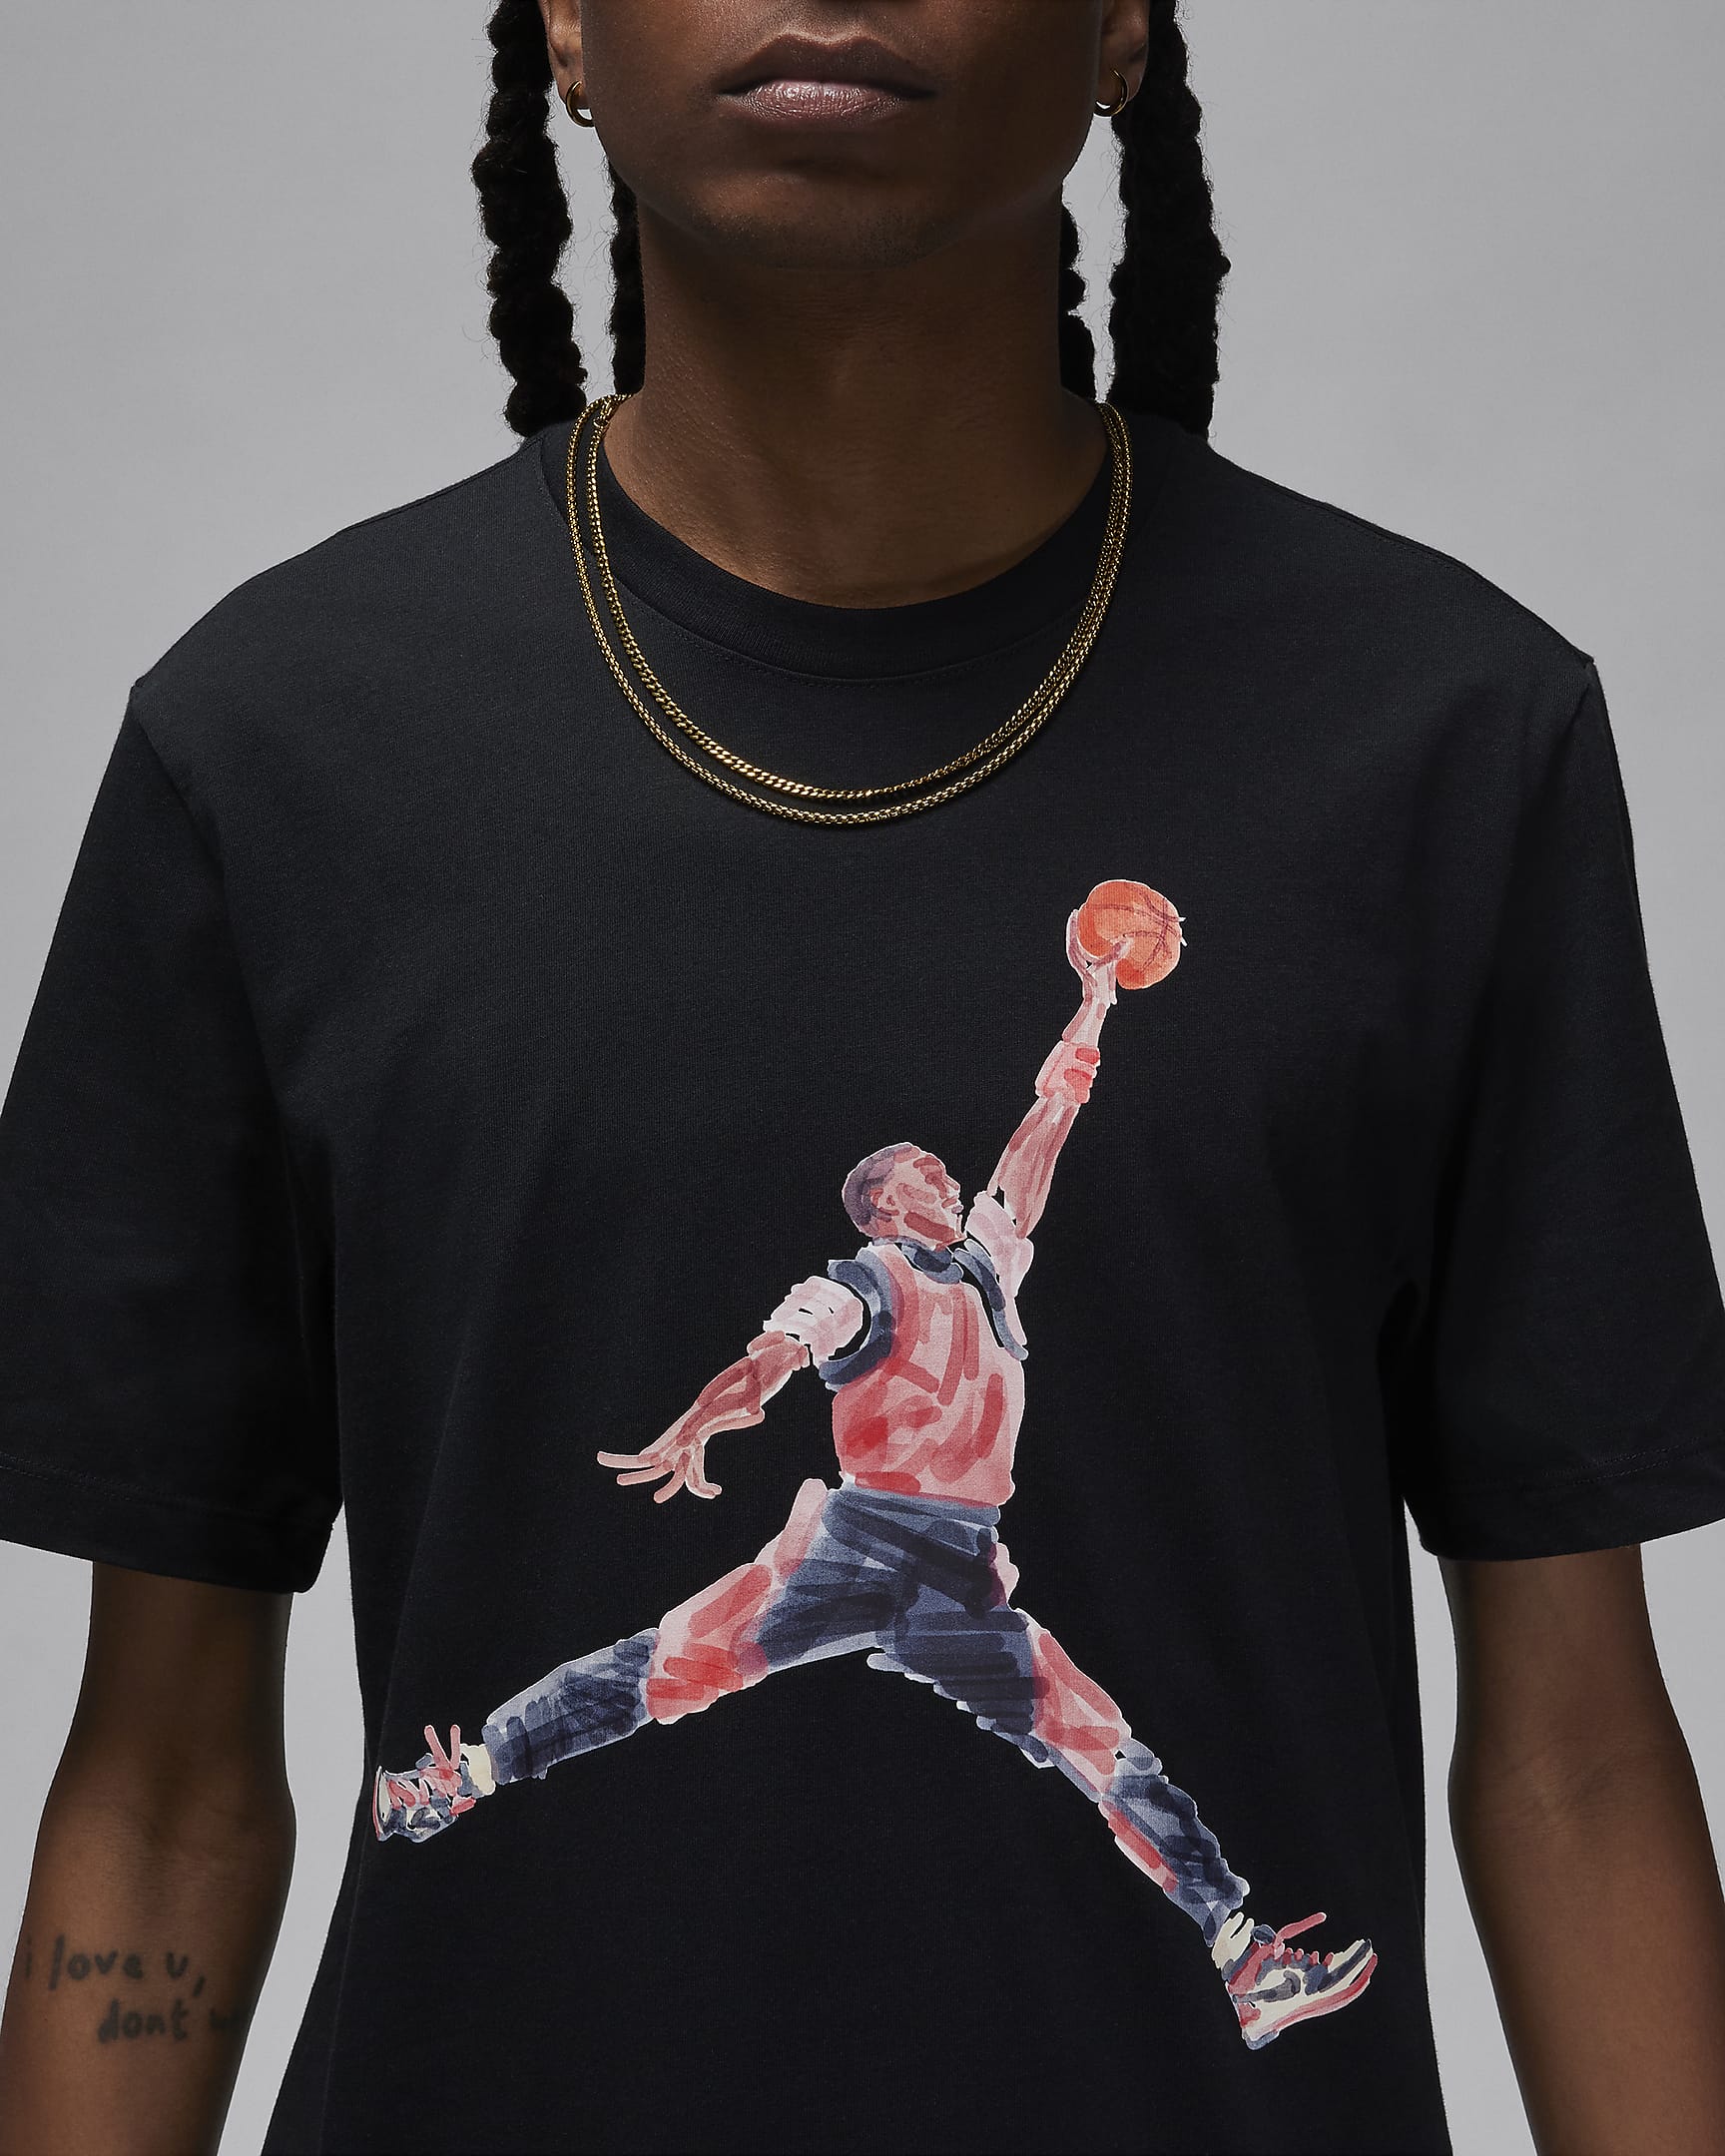 Jordan Brand Men's T-Shirt. Nike BG